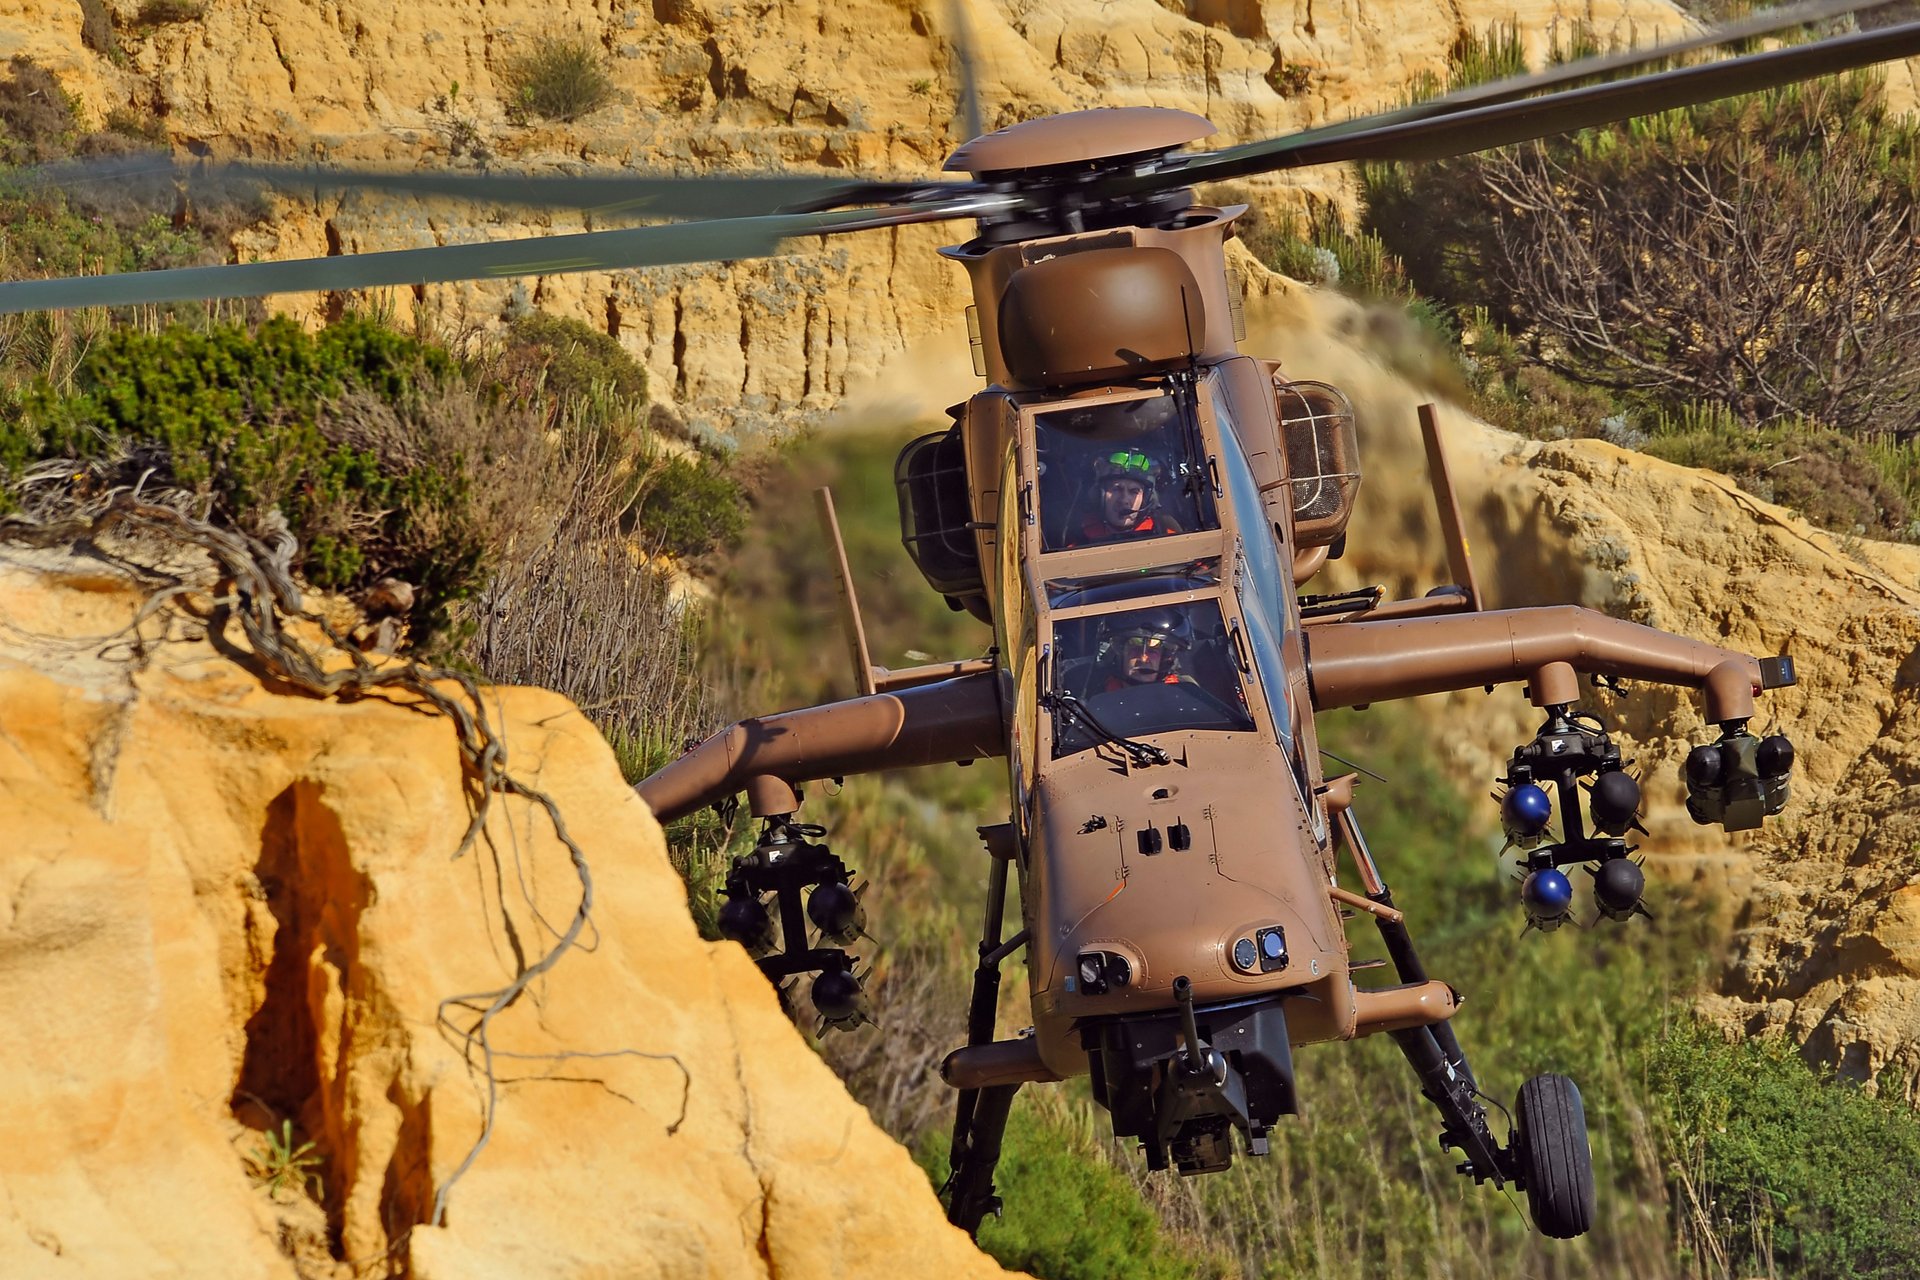 将于2015年8月进行飞行演示的战斗直升机是法国陆军的“虎式HAD”。这是一种现代化的、经过实战验证的高科技直升机，具有首个全复合结构、最先进的玻璃驾驶舱和全范围武器，使其能够成功完成多种任务，如攻击、护航、地面火力支持、武装侦察和战斗。